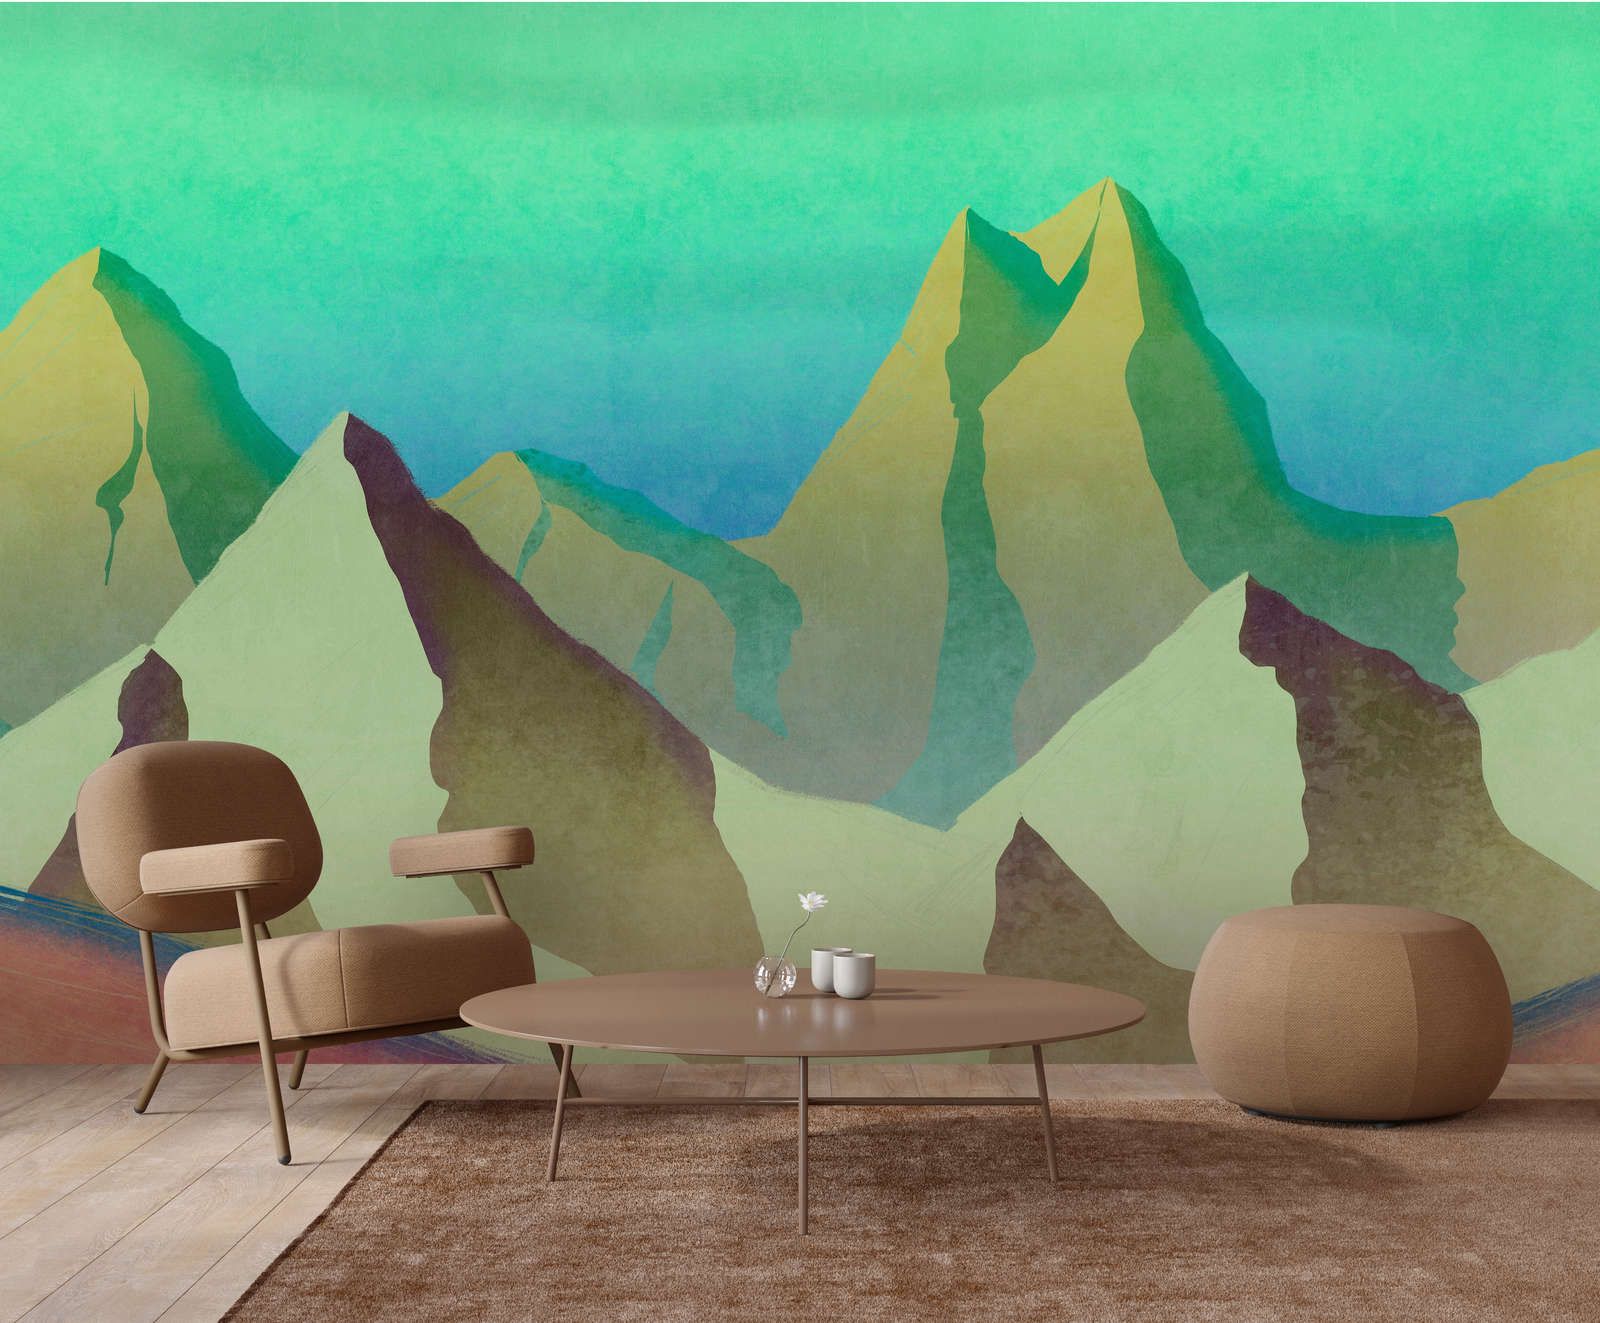             Digital behang »altitude 2« - Abstracte bergen in groen met vintage pleisterstructuur - Glad, licht parelend vlies
        